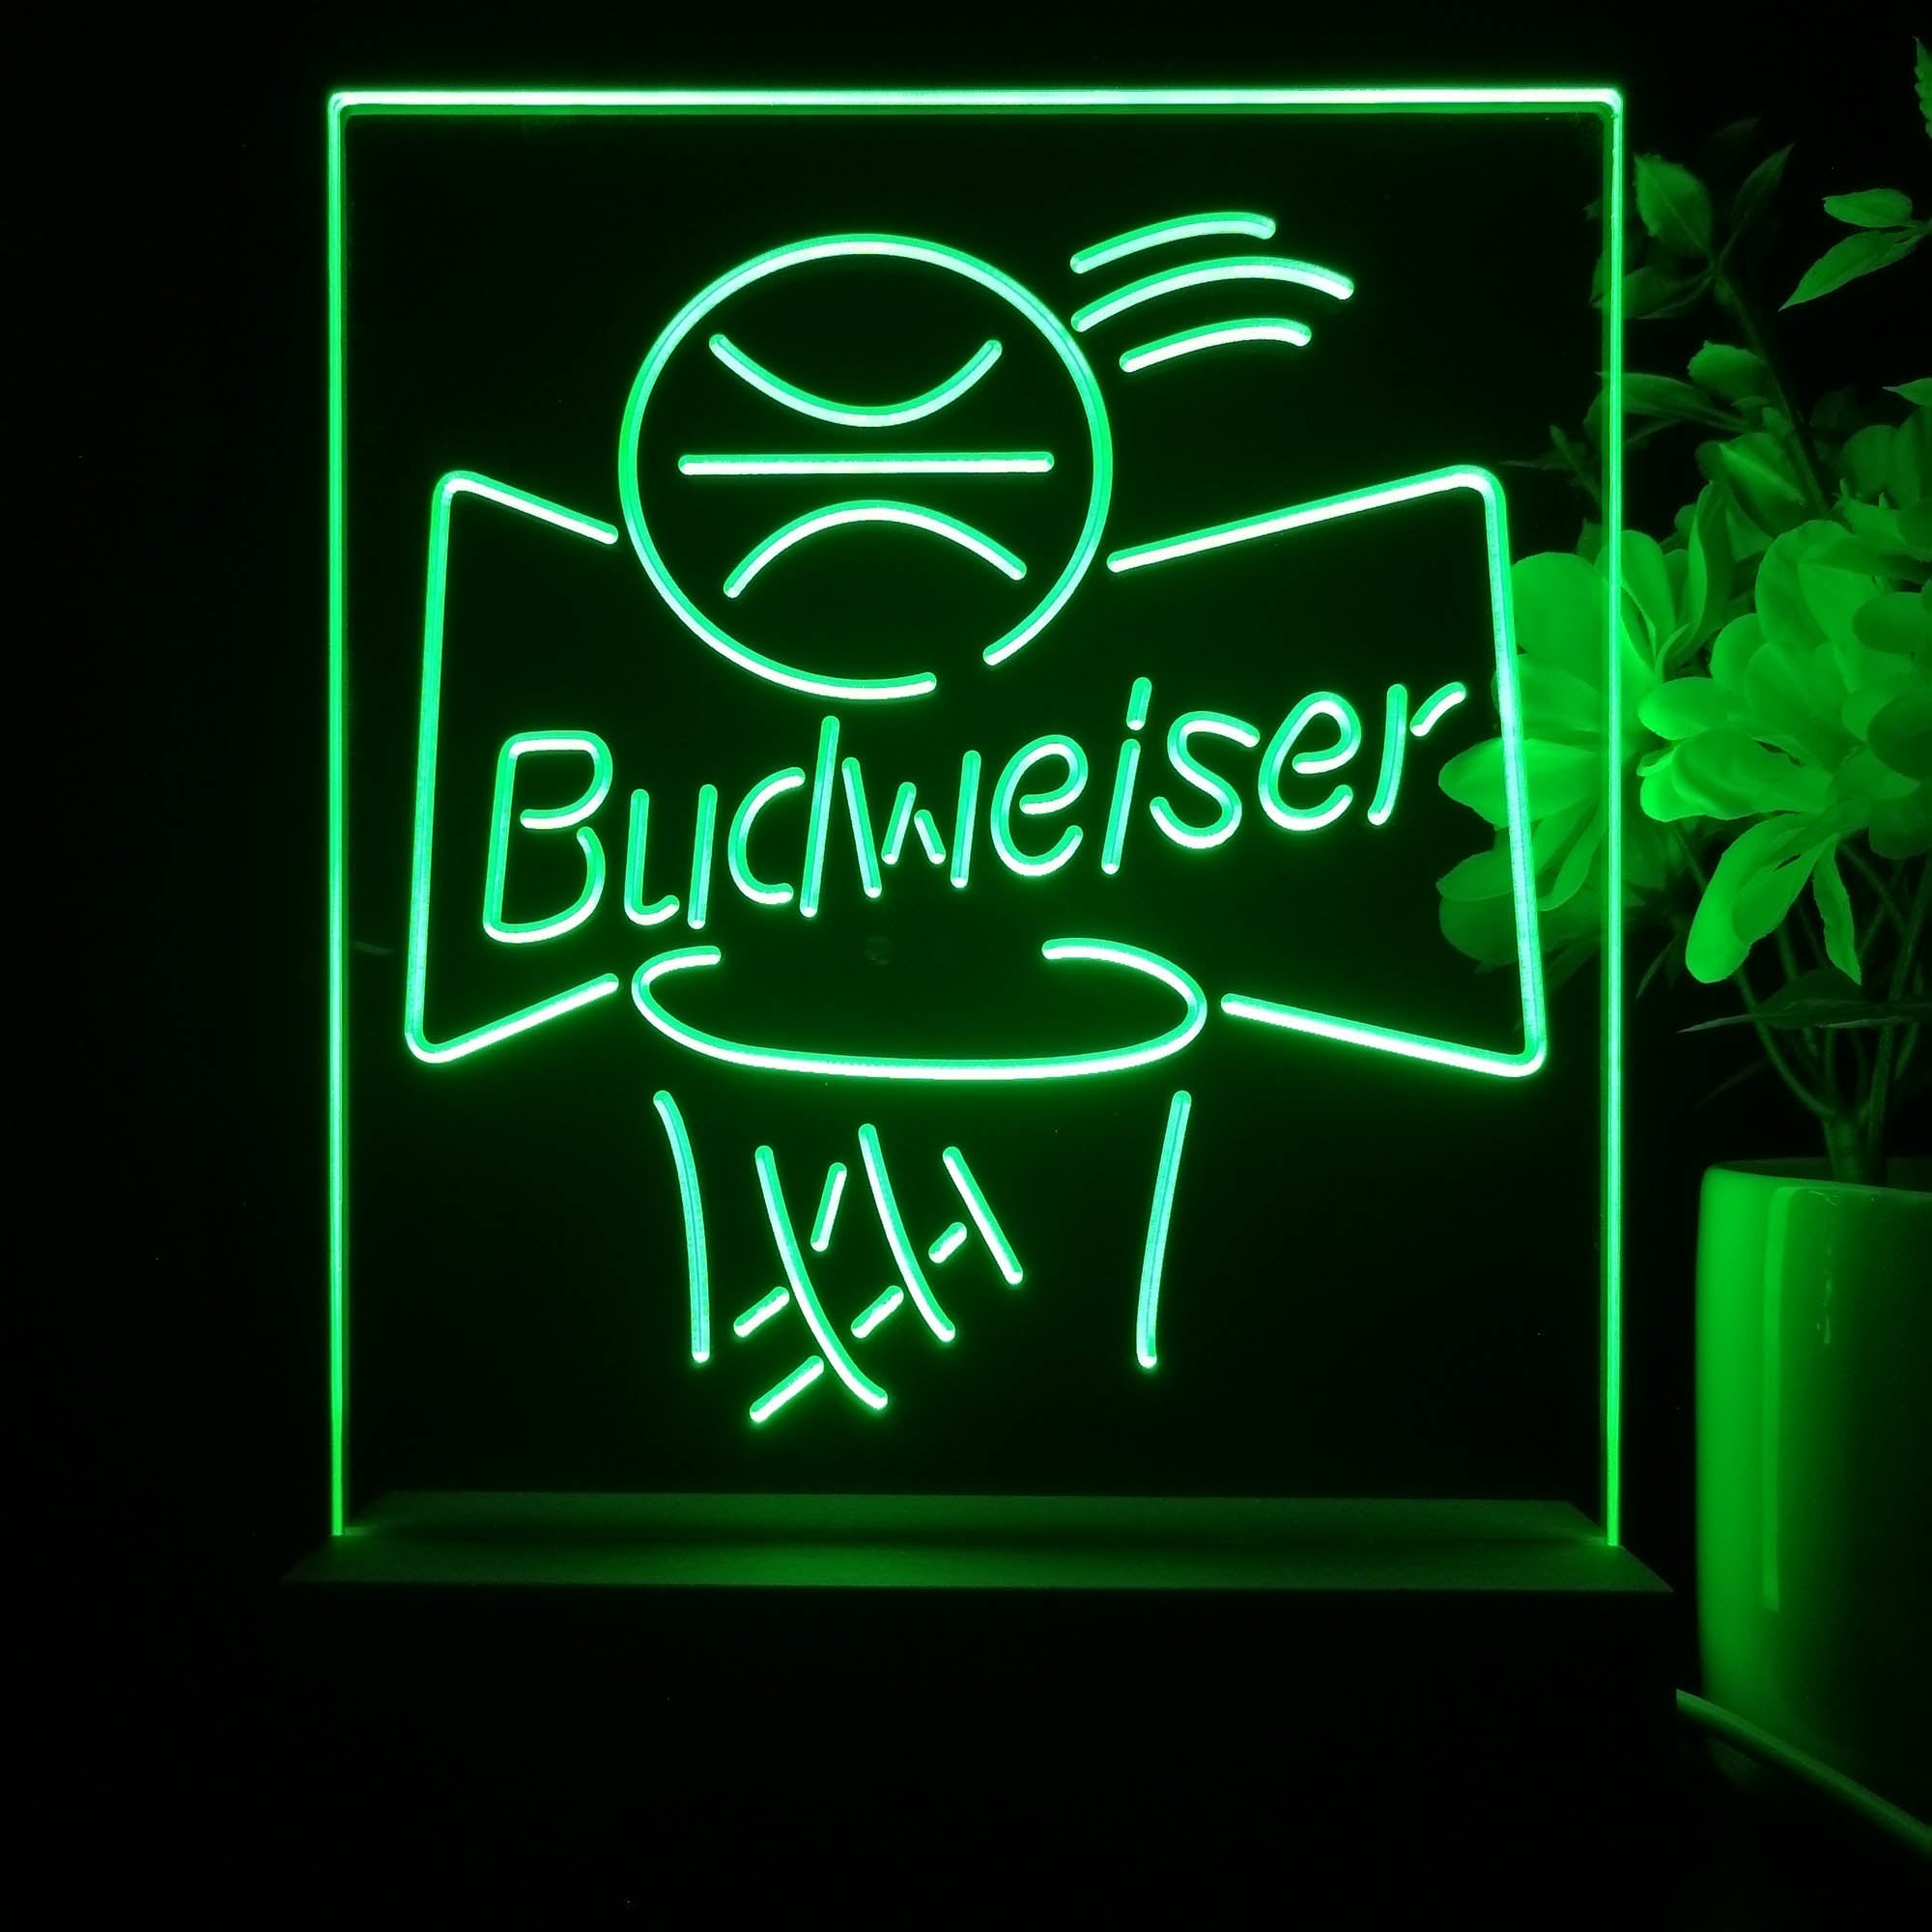 Budweiser Basketball Net Night Light Neon Pub Bar Lamp